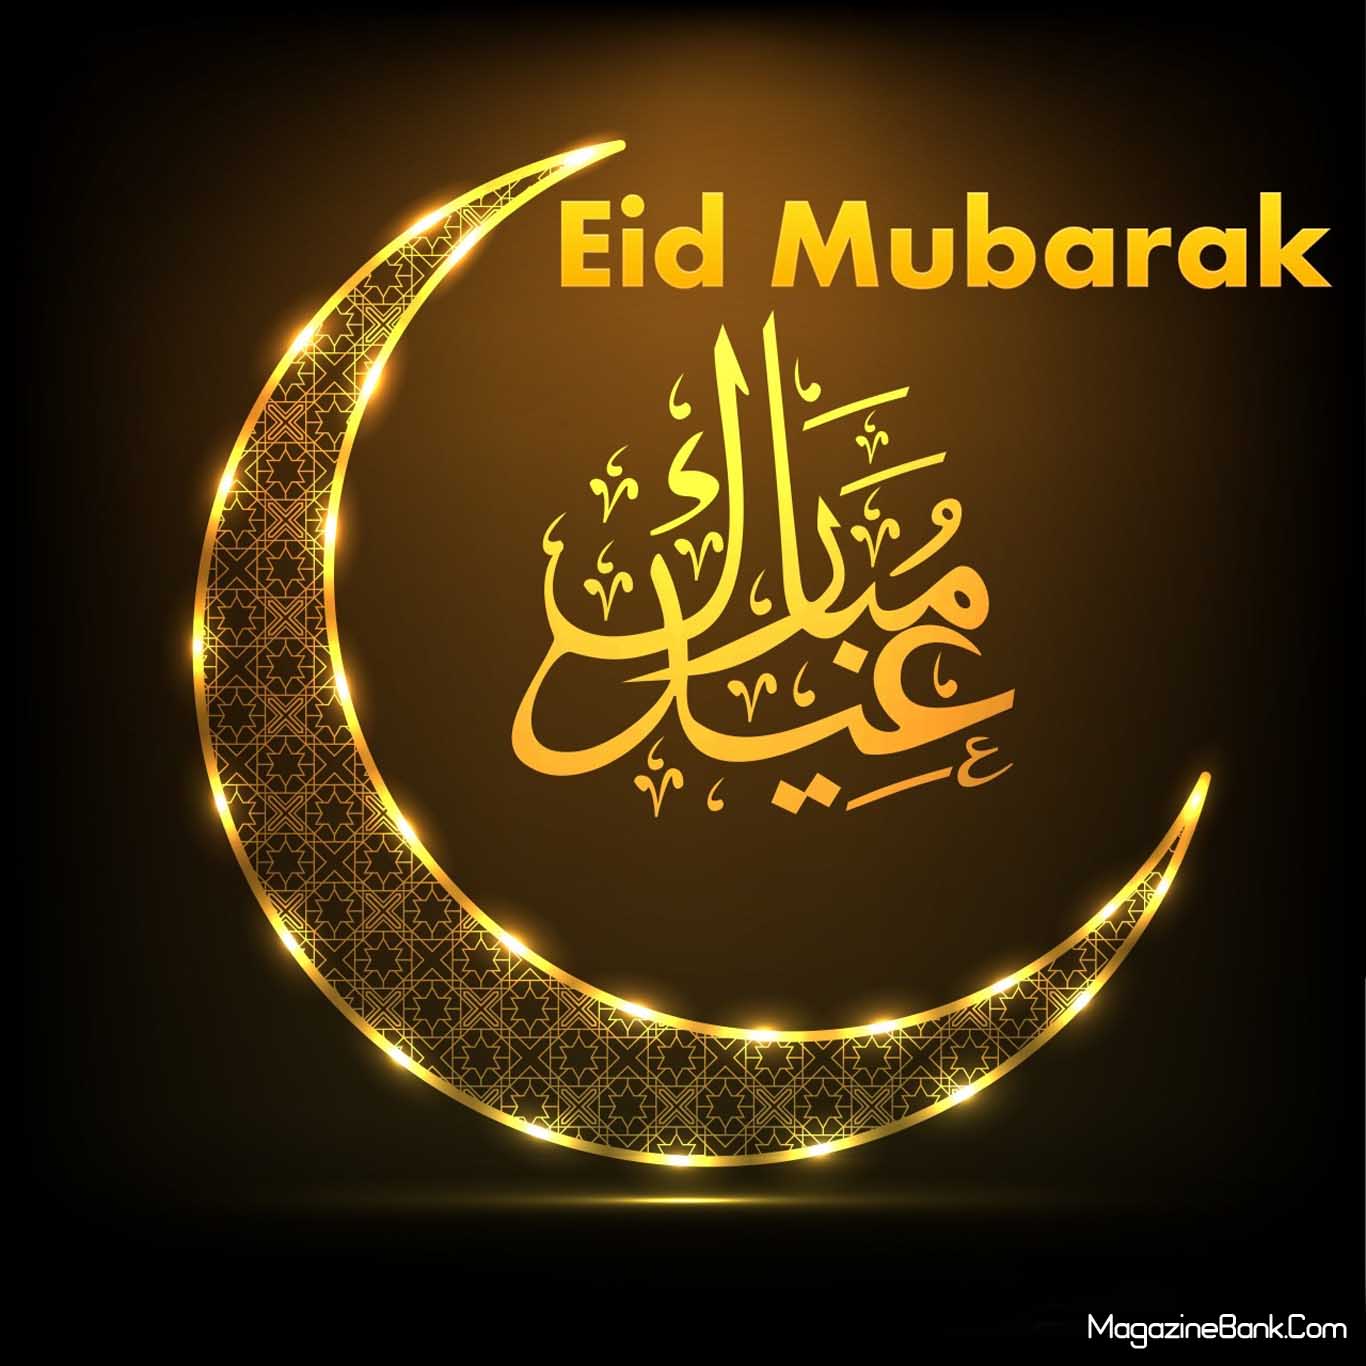 Eid Mubarak Live Wallpapers - Eid Mubarak Wallpaper Hd , HD Wallpaper & Backgrounds